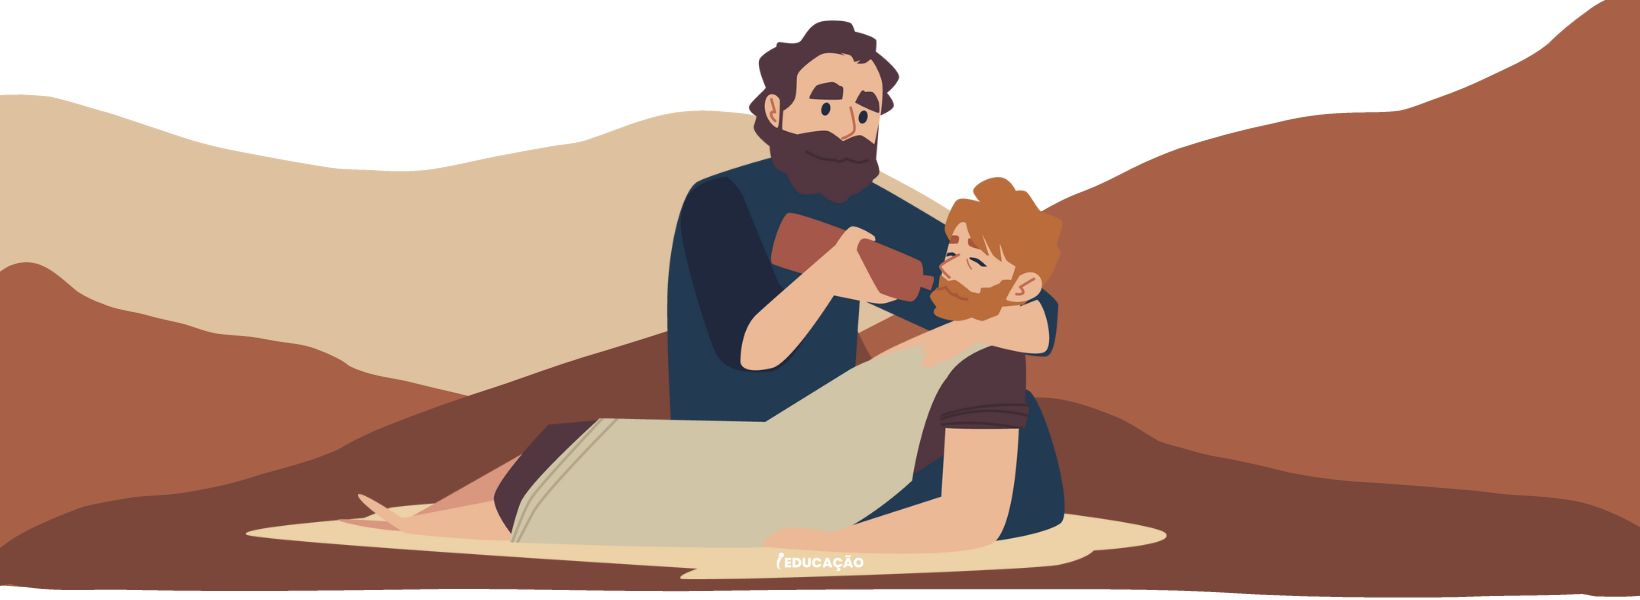 História infantil - Histórias da Bíblia - O Bom Samaritano